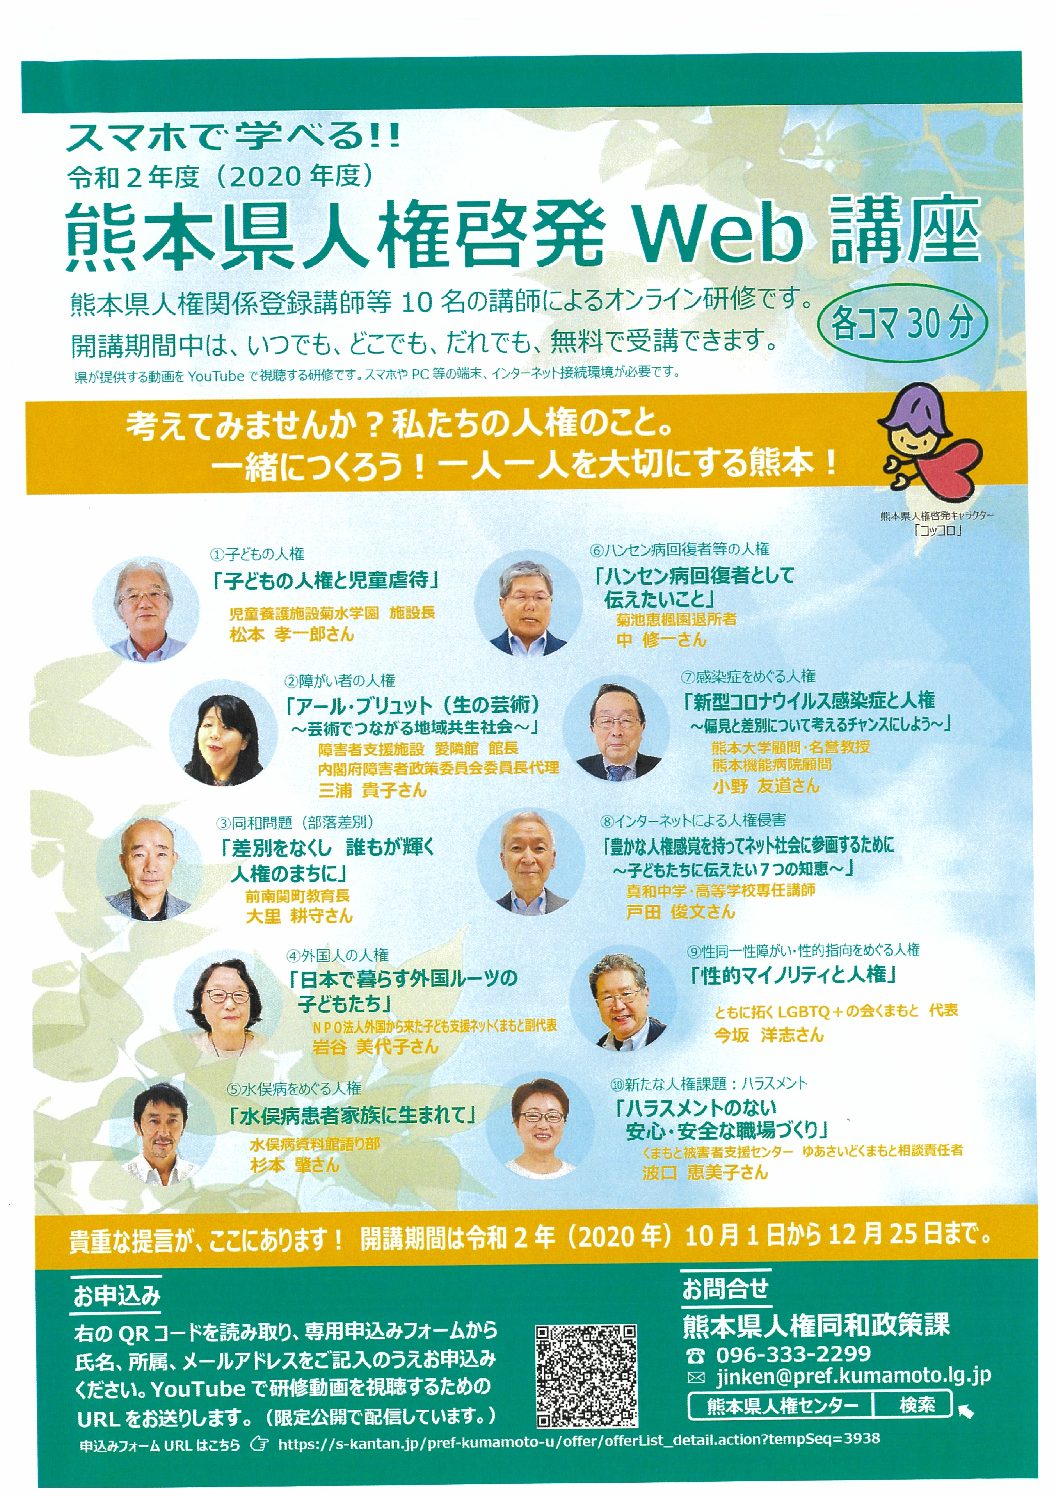 一般社団法人熊本県私立幼稚園連合会 感染防止対策チェックリストに係るq Aについて